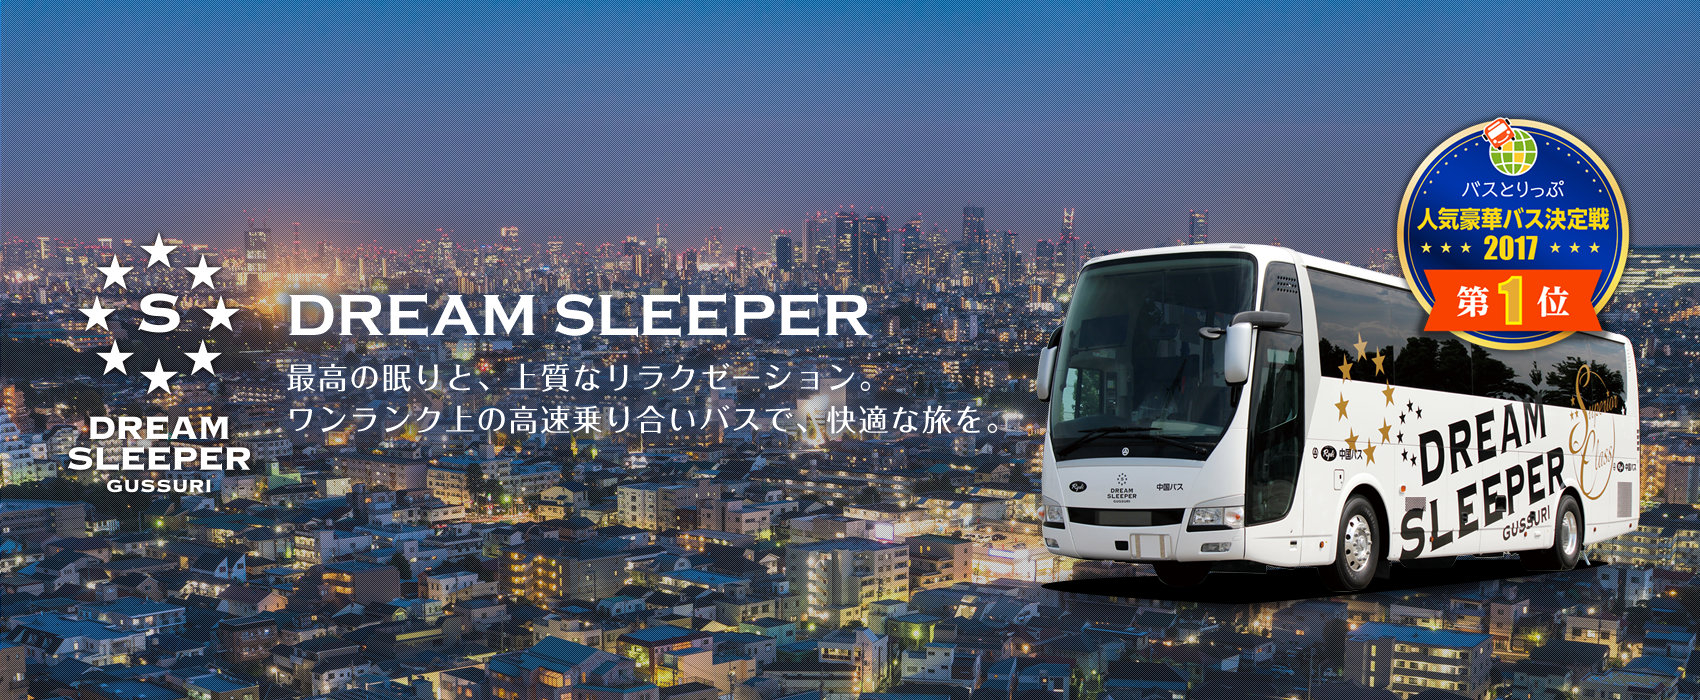 メイン画像:DREAMSLEEPER 最高の眠りと、上質なリラクゼーション。ワンランク上の高速乗合バスで、快適な旅を。